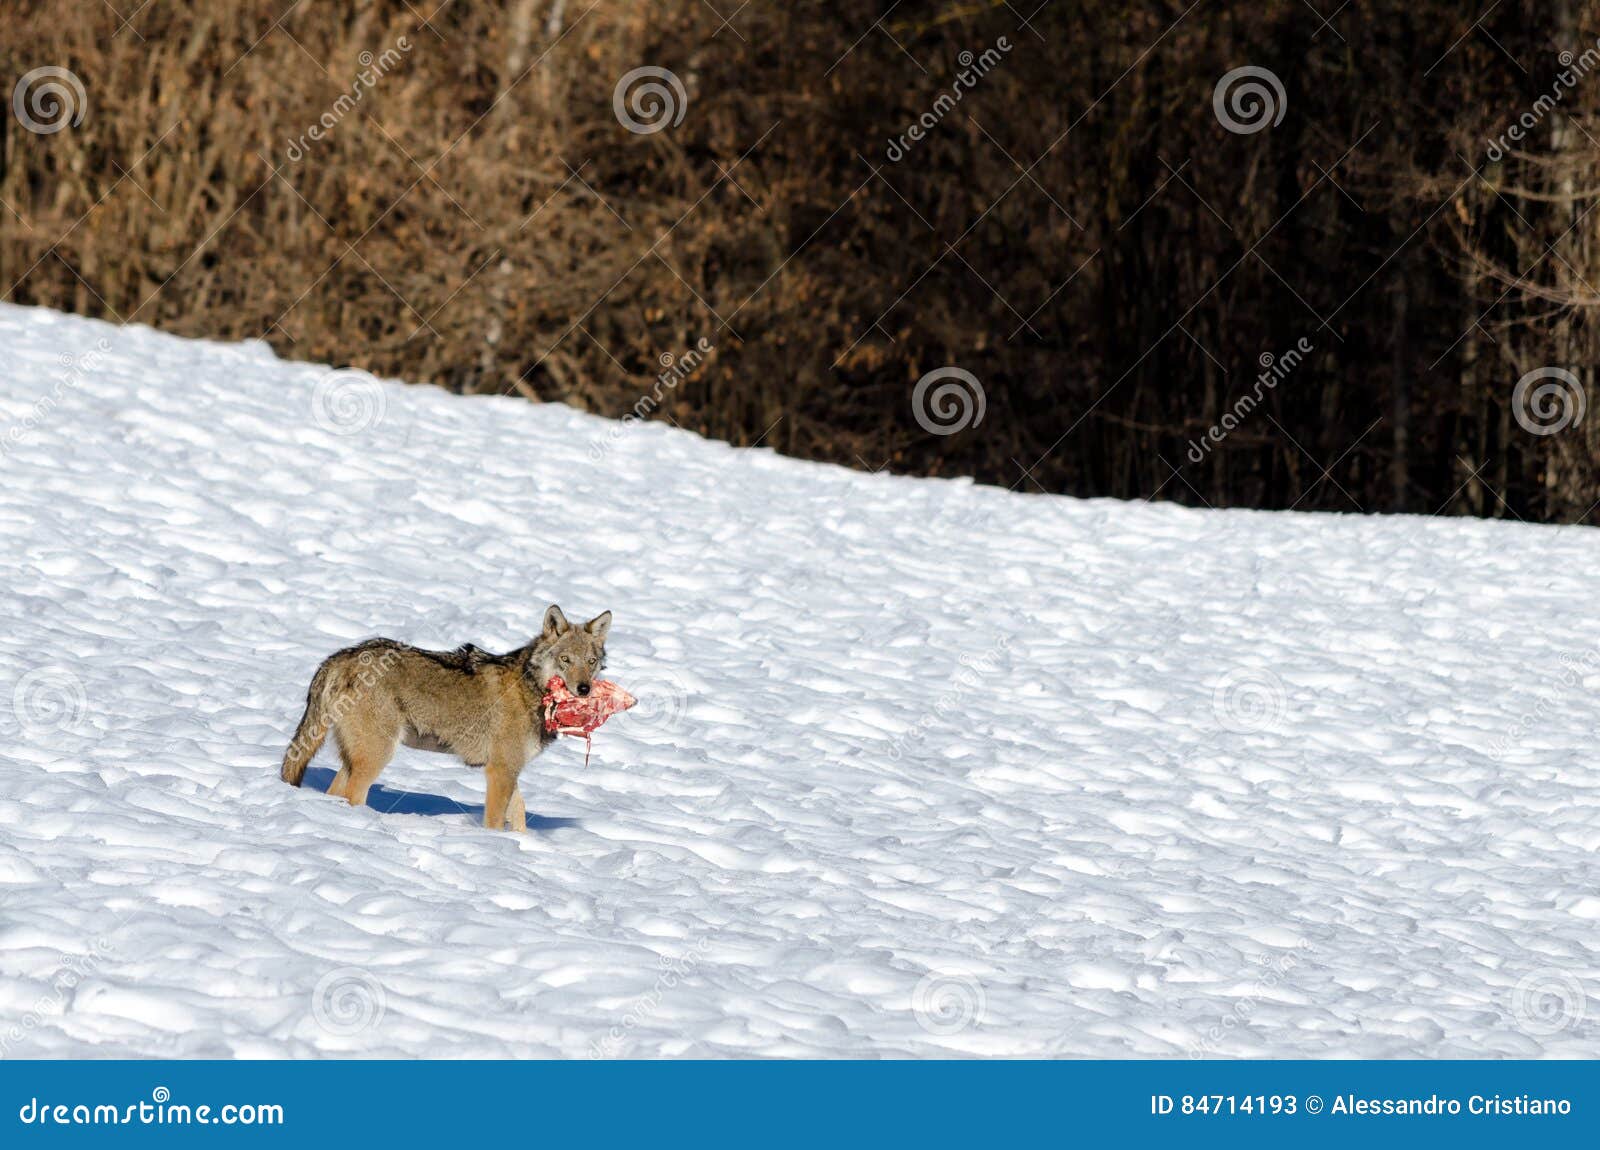 italian wolf canis lupus italicus